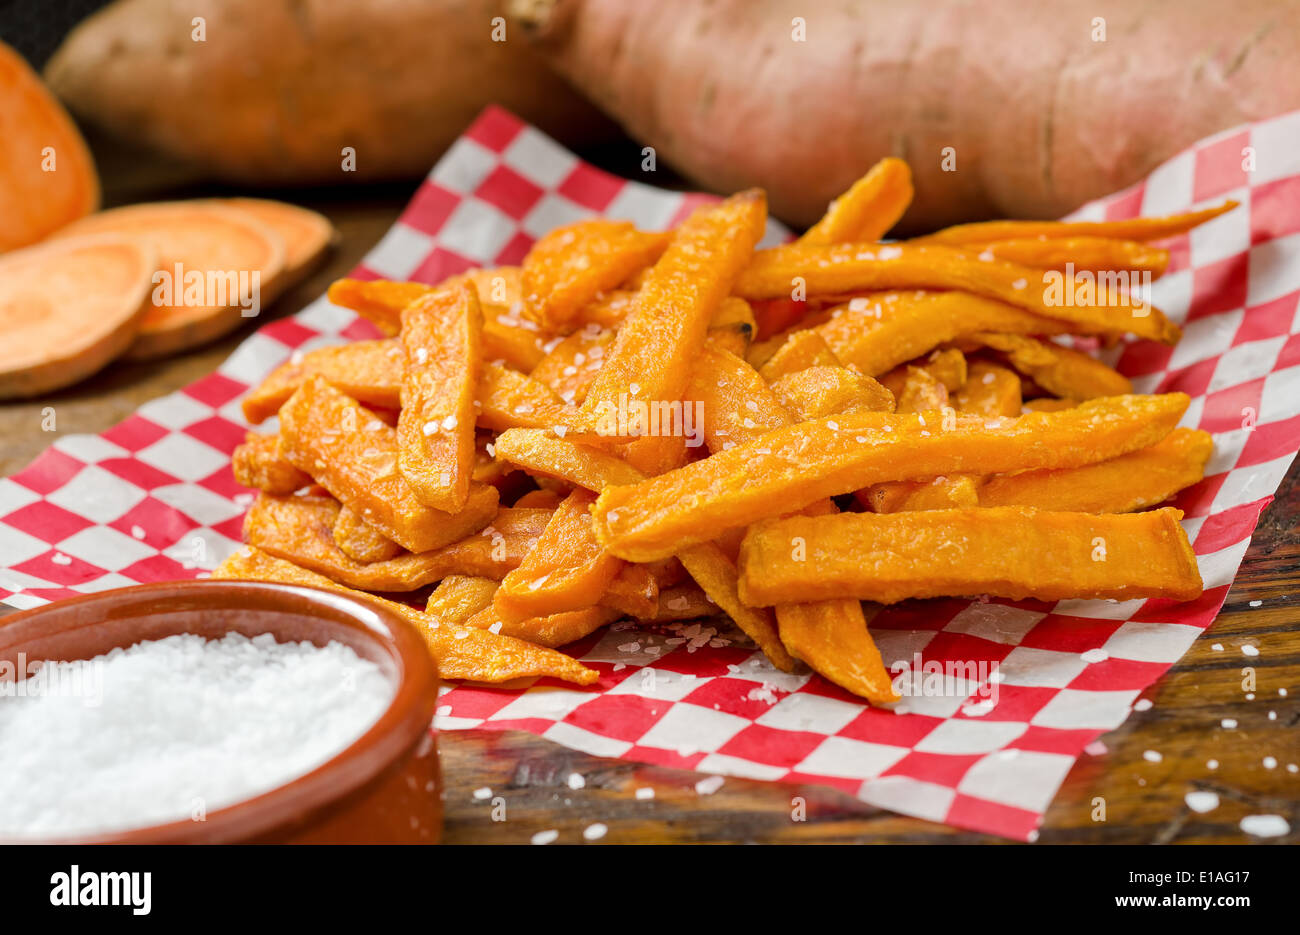 Eine Portion lecker tief gebratene Süßkartoffel Pommes Frites. Stockfoto